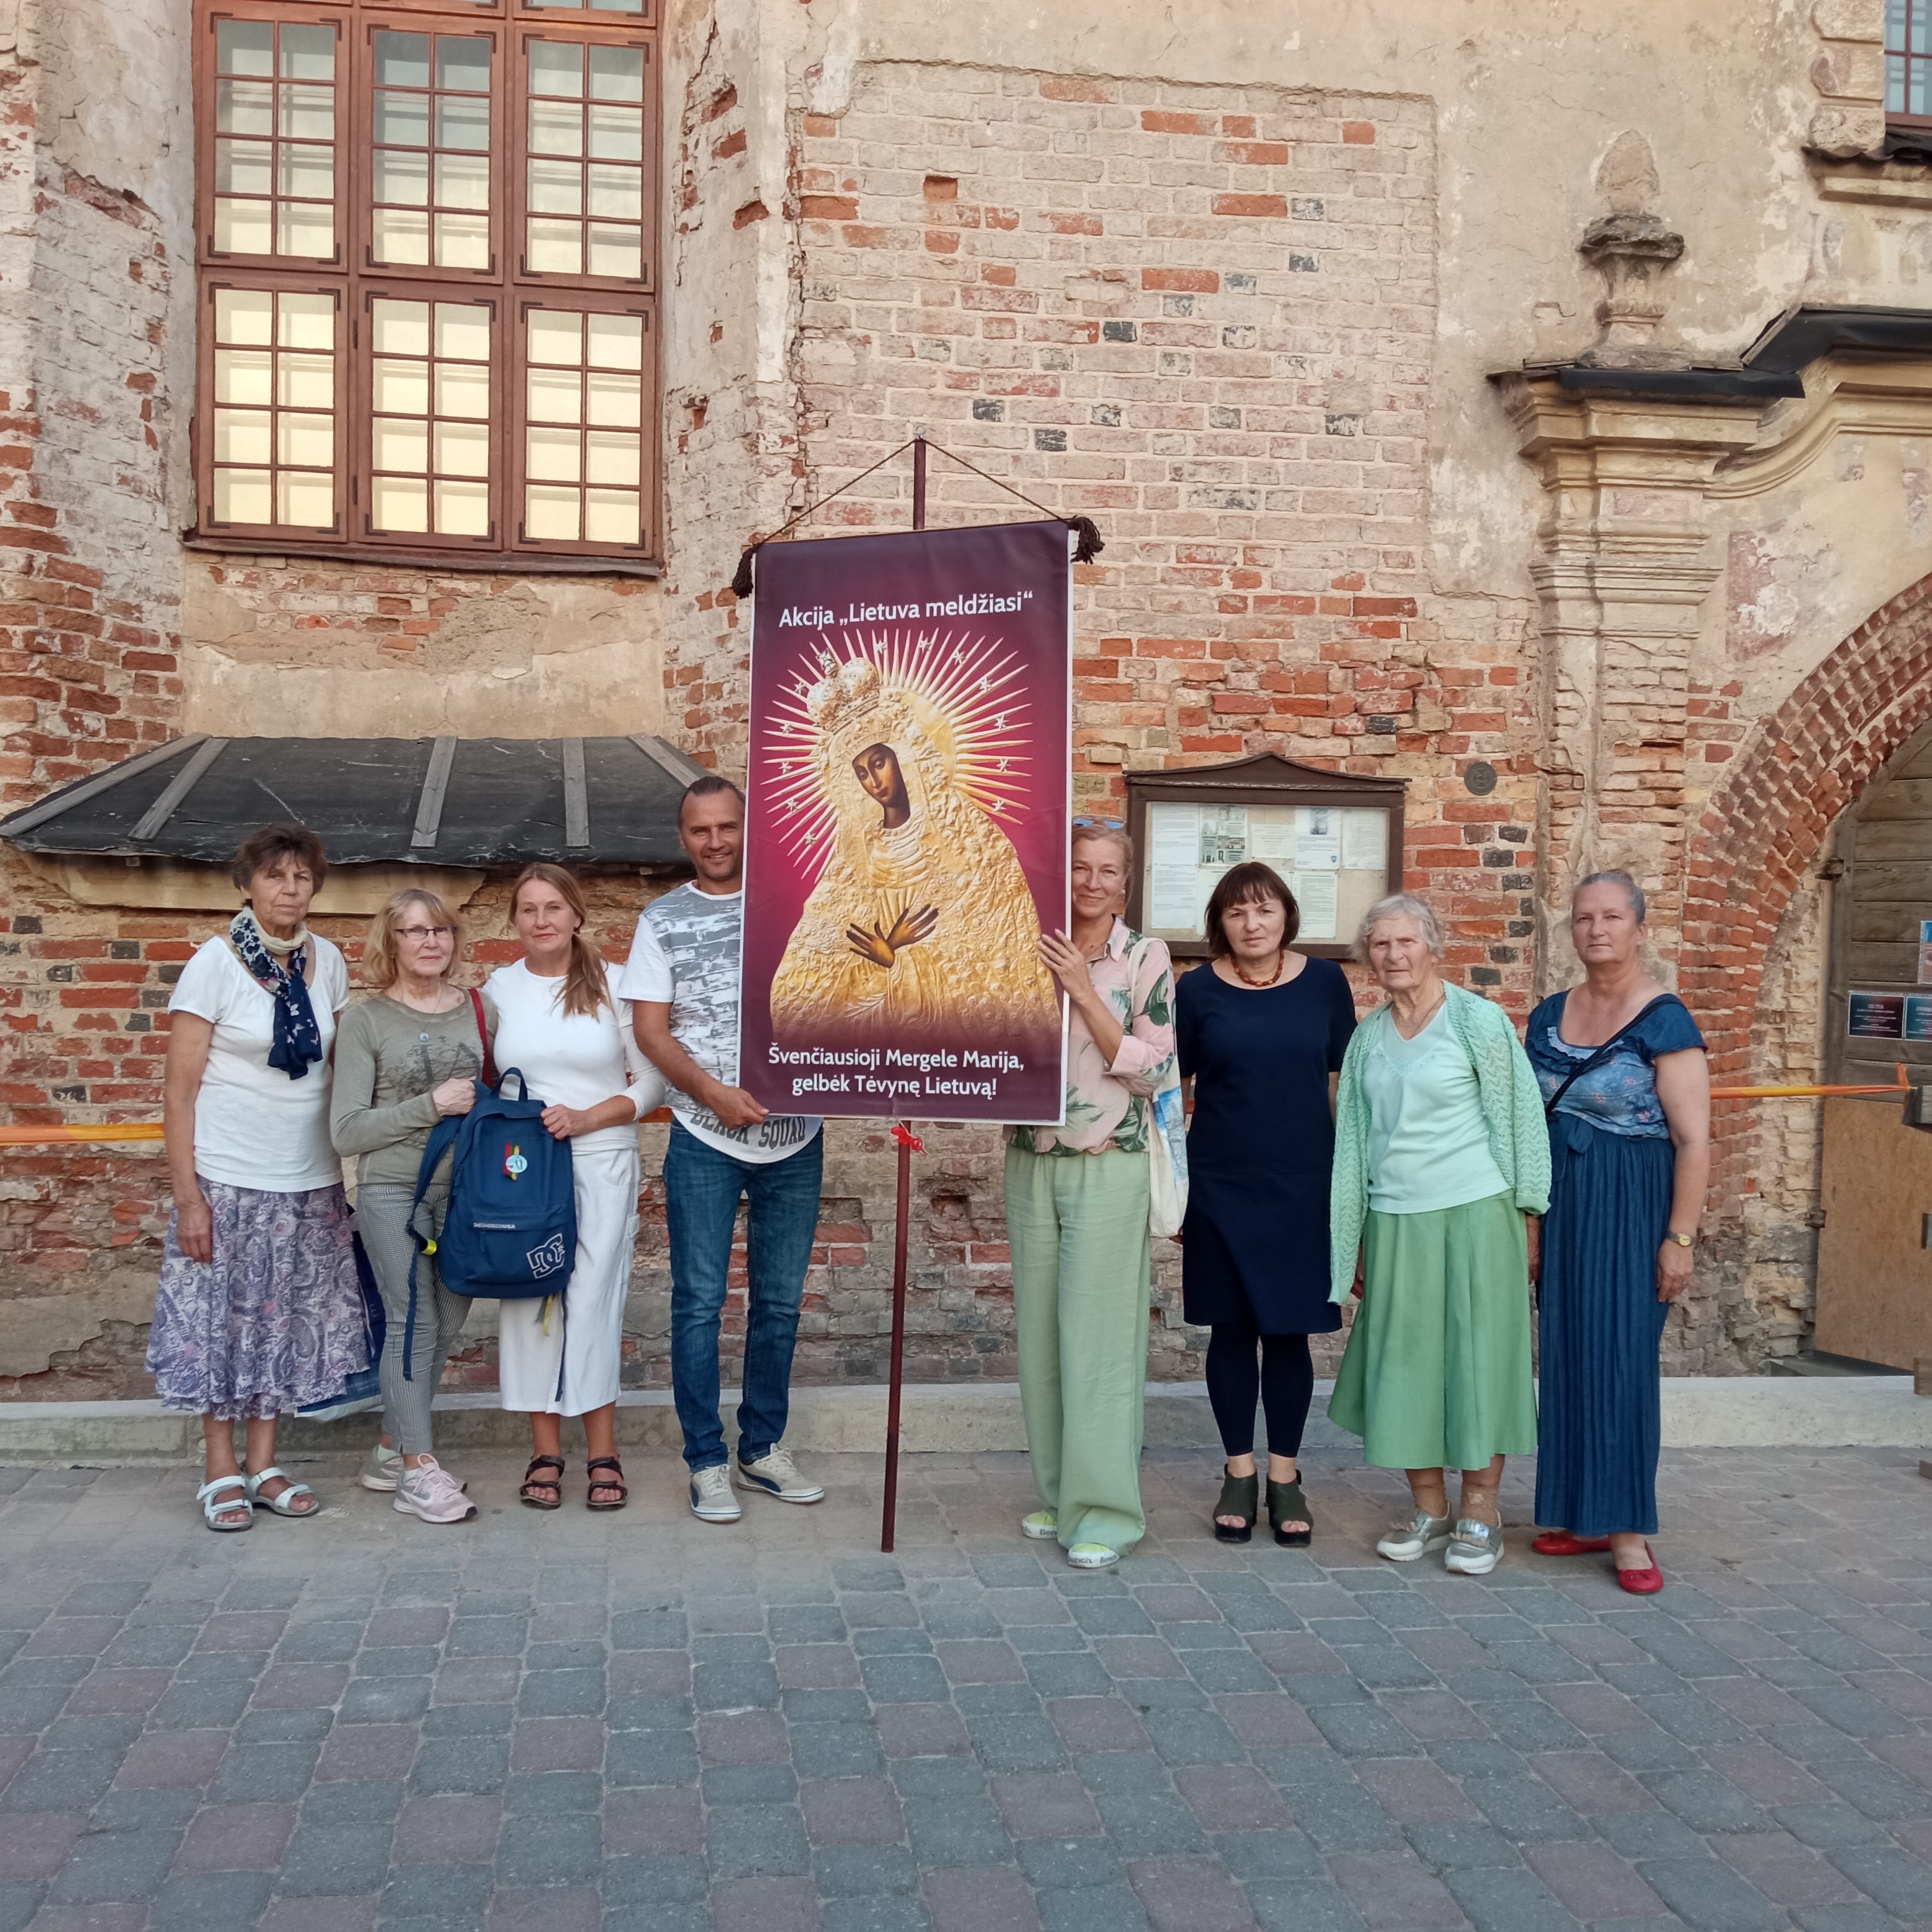 Rugsėjo 13 d. Vilniuje meldėsi 8 maldininkai. Nuo katedros ėjome iki Pranciškonų bažnyčios, meldėmės prie prezidentūros.
